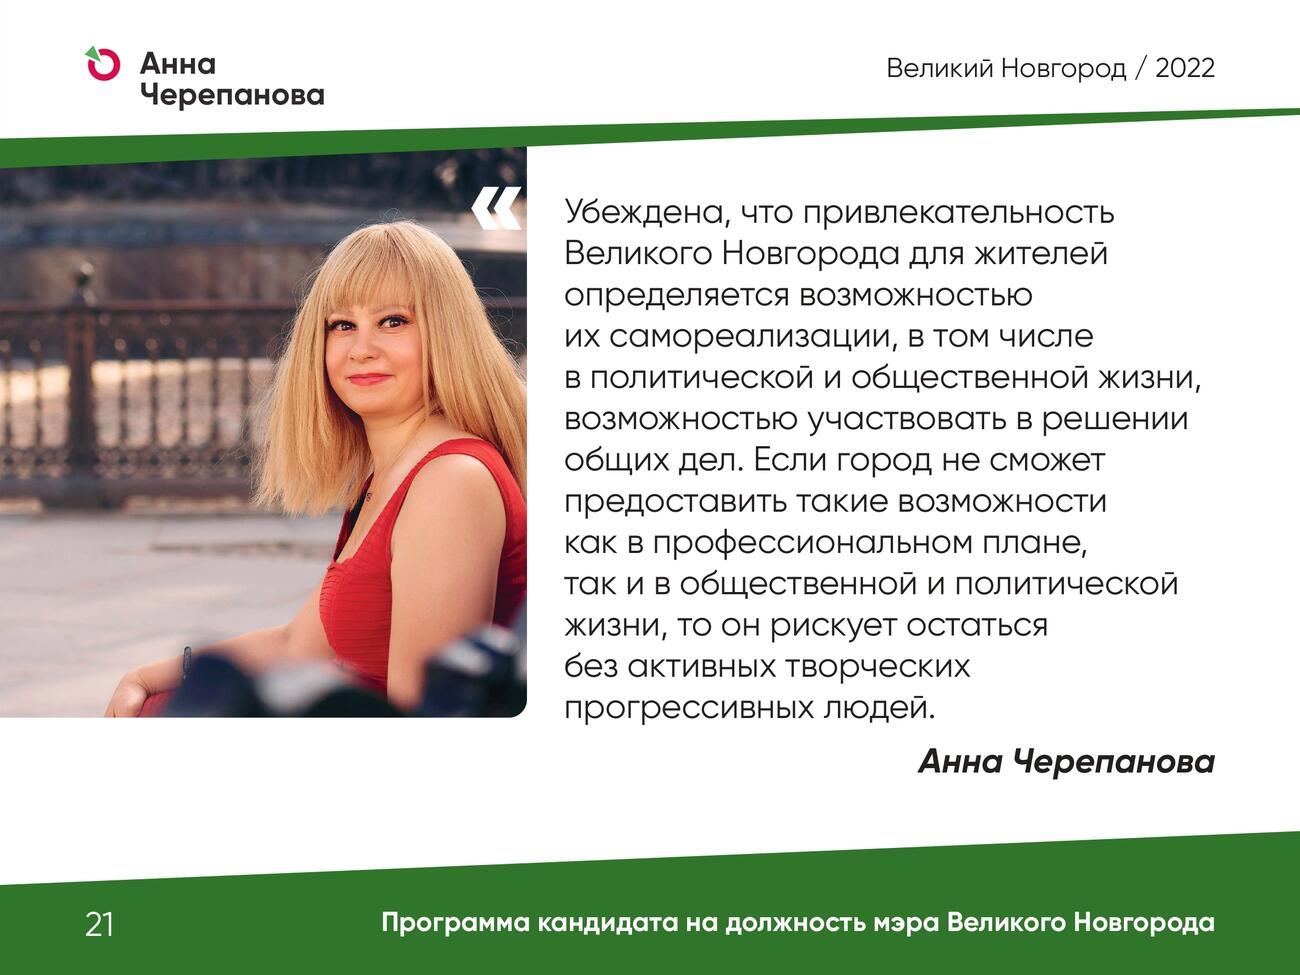 Презентация программы Анны Черепановой